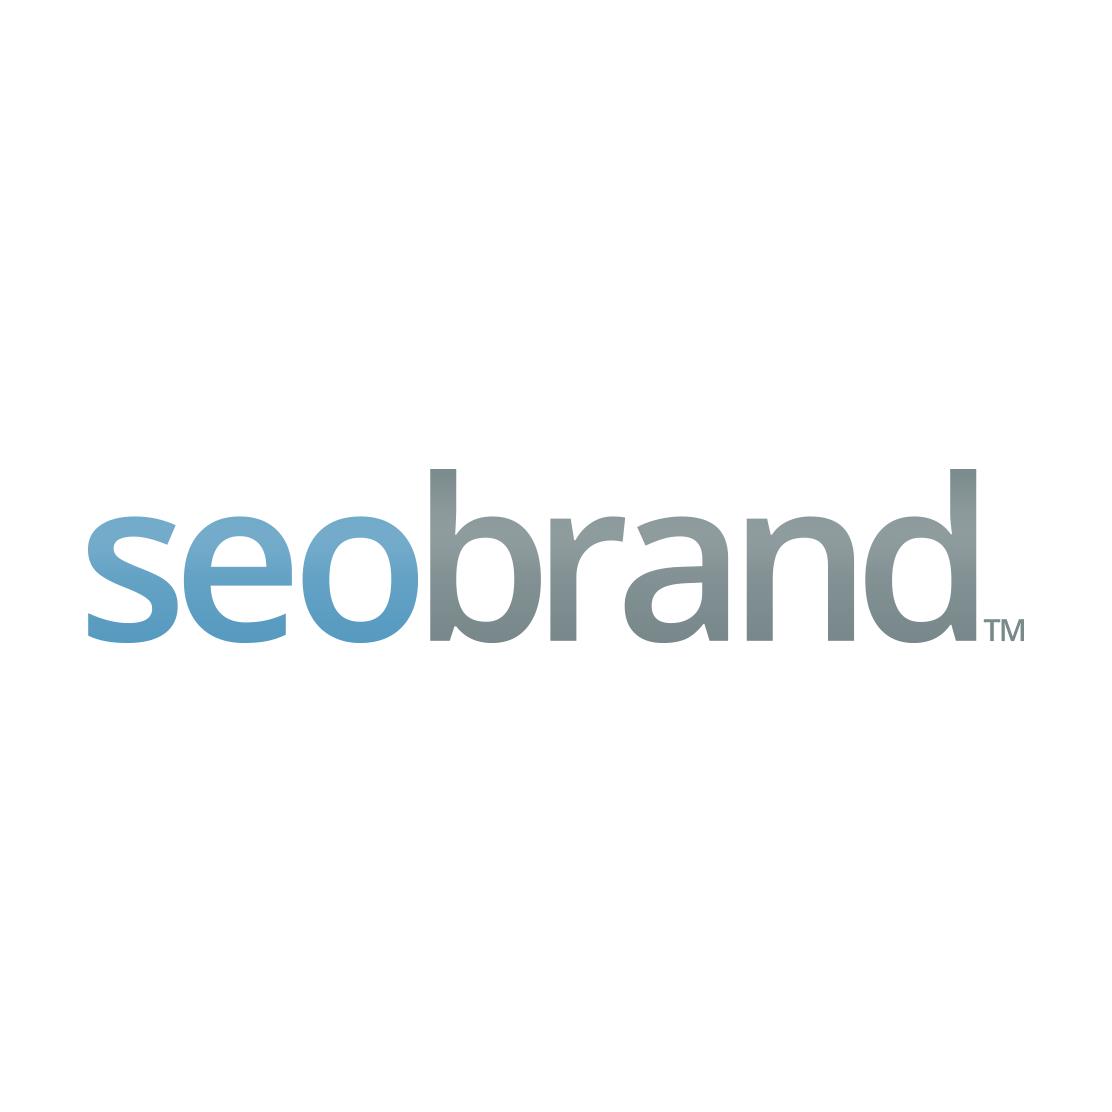 Best Philadelphia SEO Agency Logo: SEO Brand